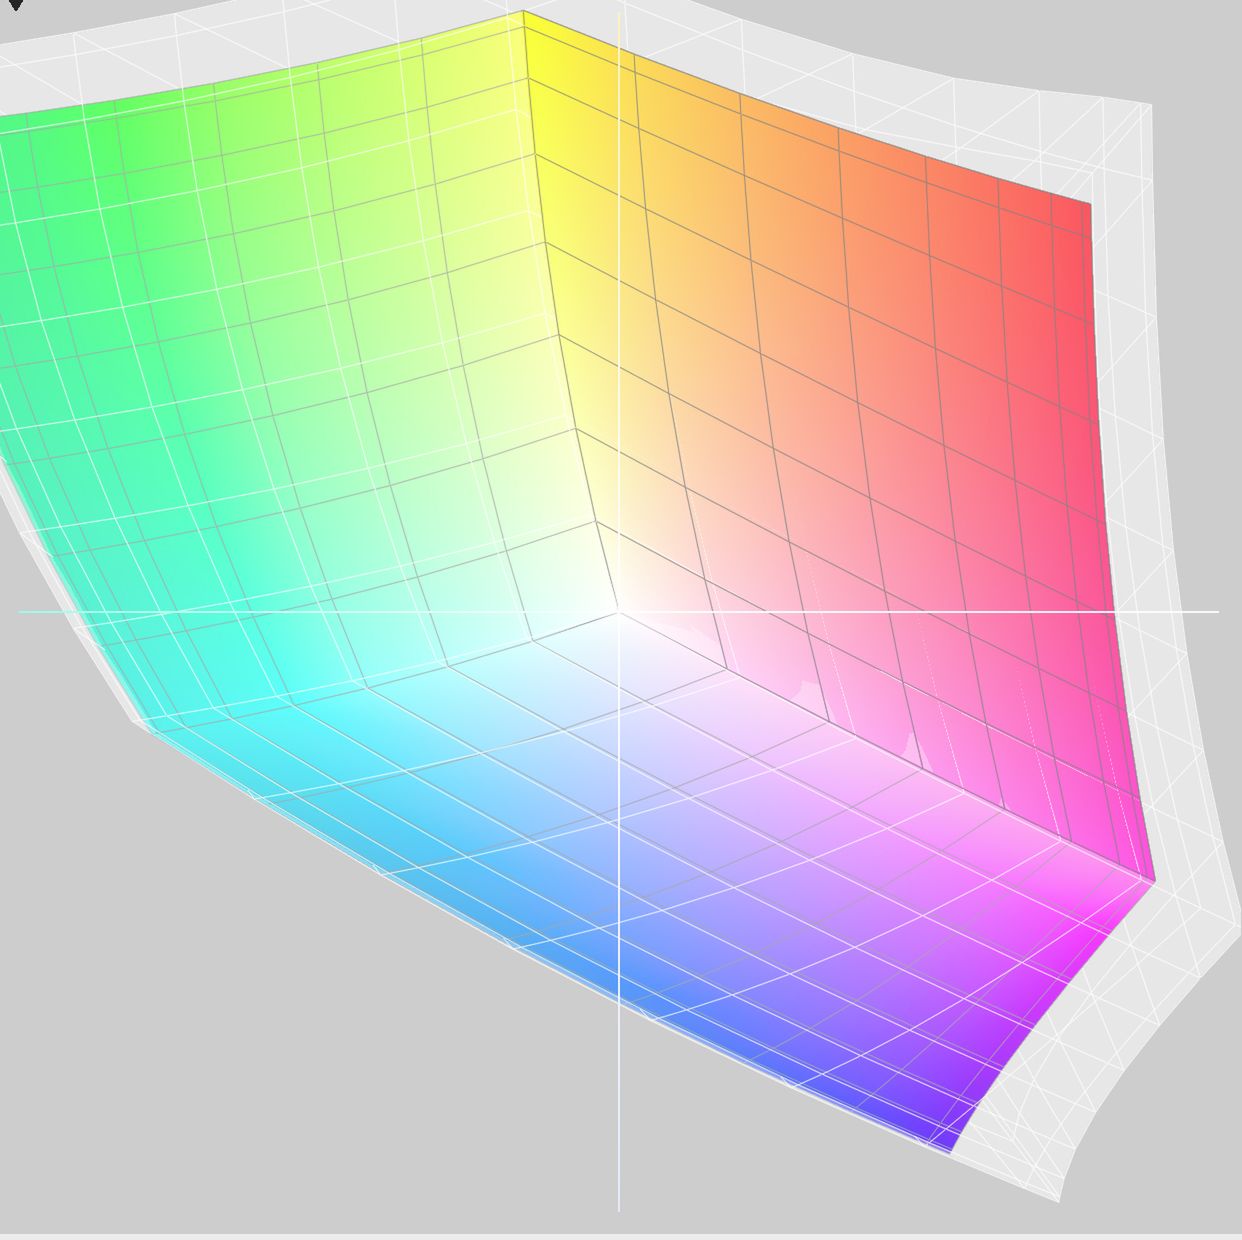 Siatka to gamut CG2420, natomiast kolorem, zaznaczone jest Adobe RGB. Jak widać, gamut CG2420 mieści w sobie całe Adobe RGB.